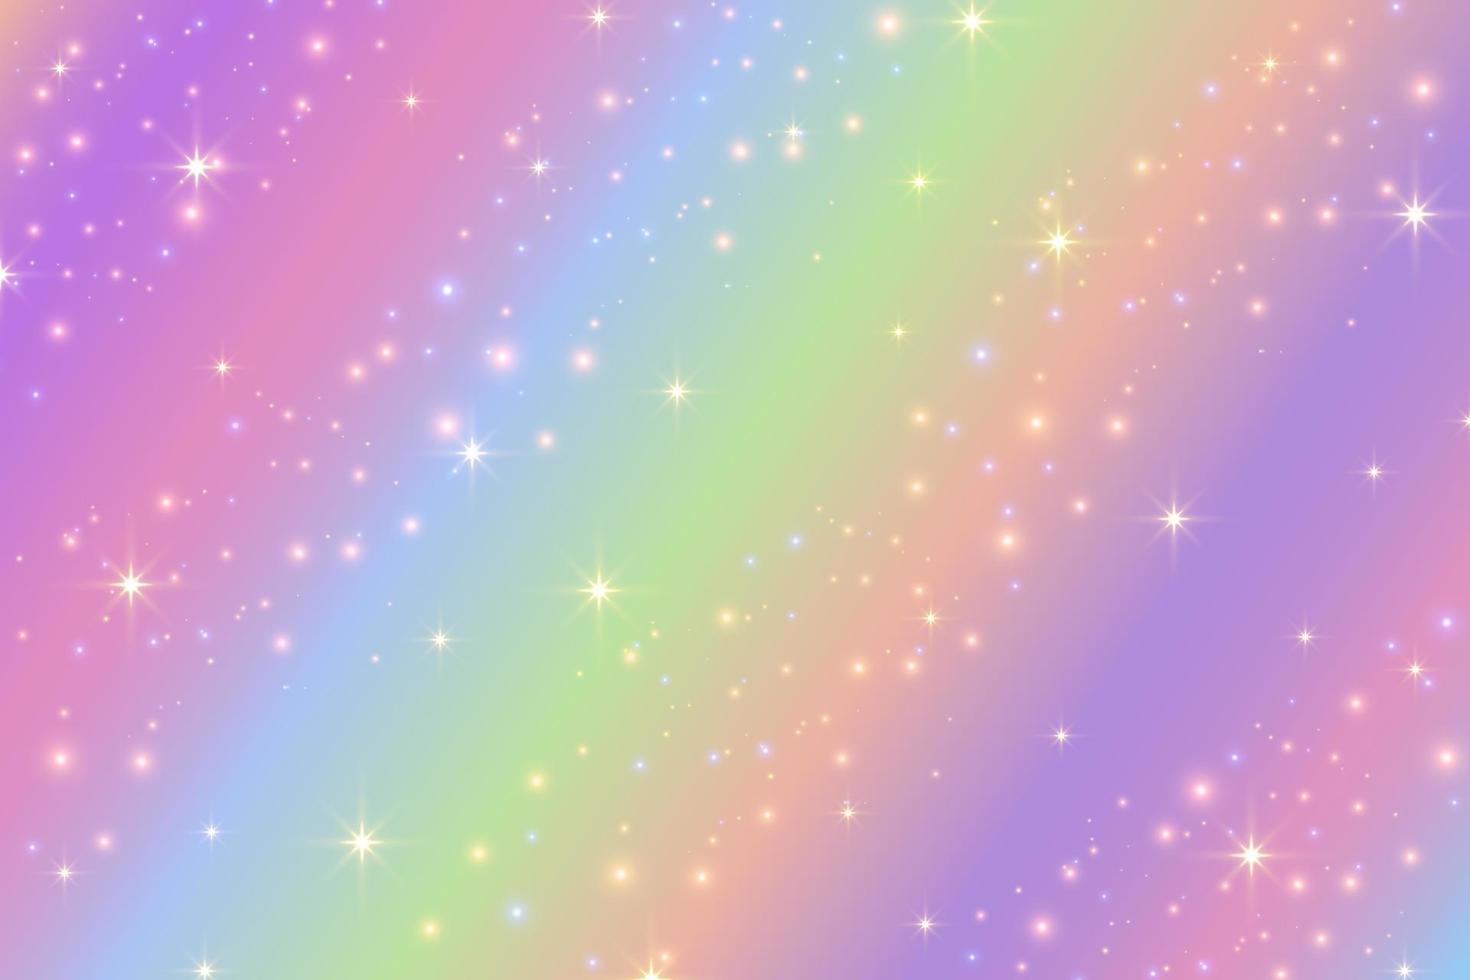 Regenbogen-Fantasy-Hintergrund. Holographische Illustration in Pastellfarben. niedlicher Cartoon-Girly-Hintergrund. heller bunter Himmel mit Sternen. Vektor. vektor